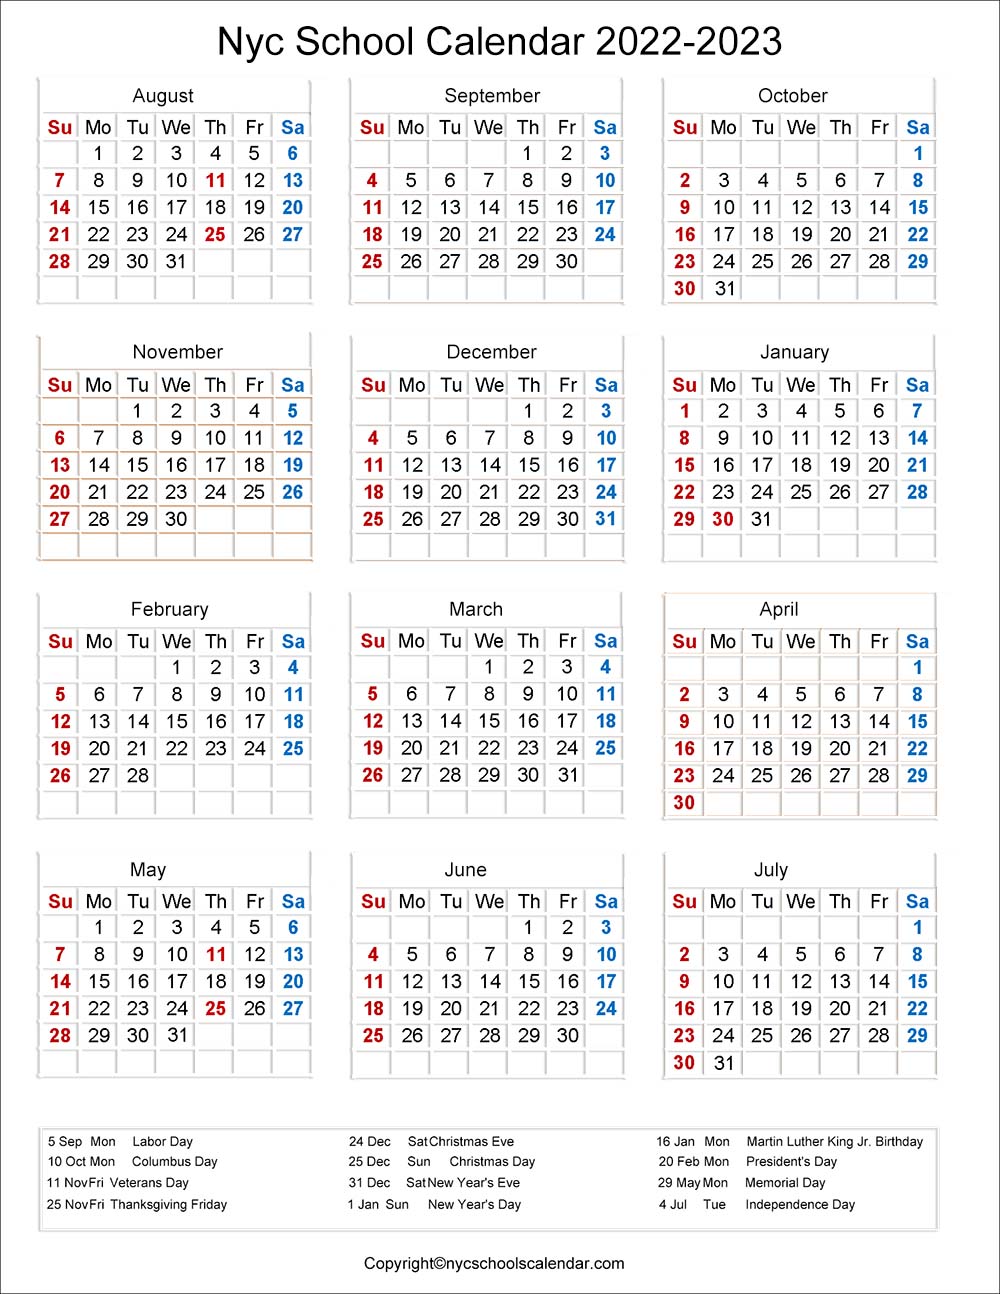 Northeastern Calendar 2022 2023 ❤️Nyc School Holidays Calendar 2022-2023 ✓